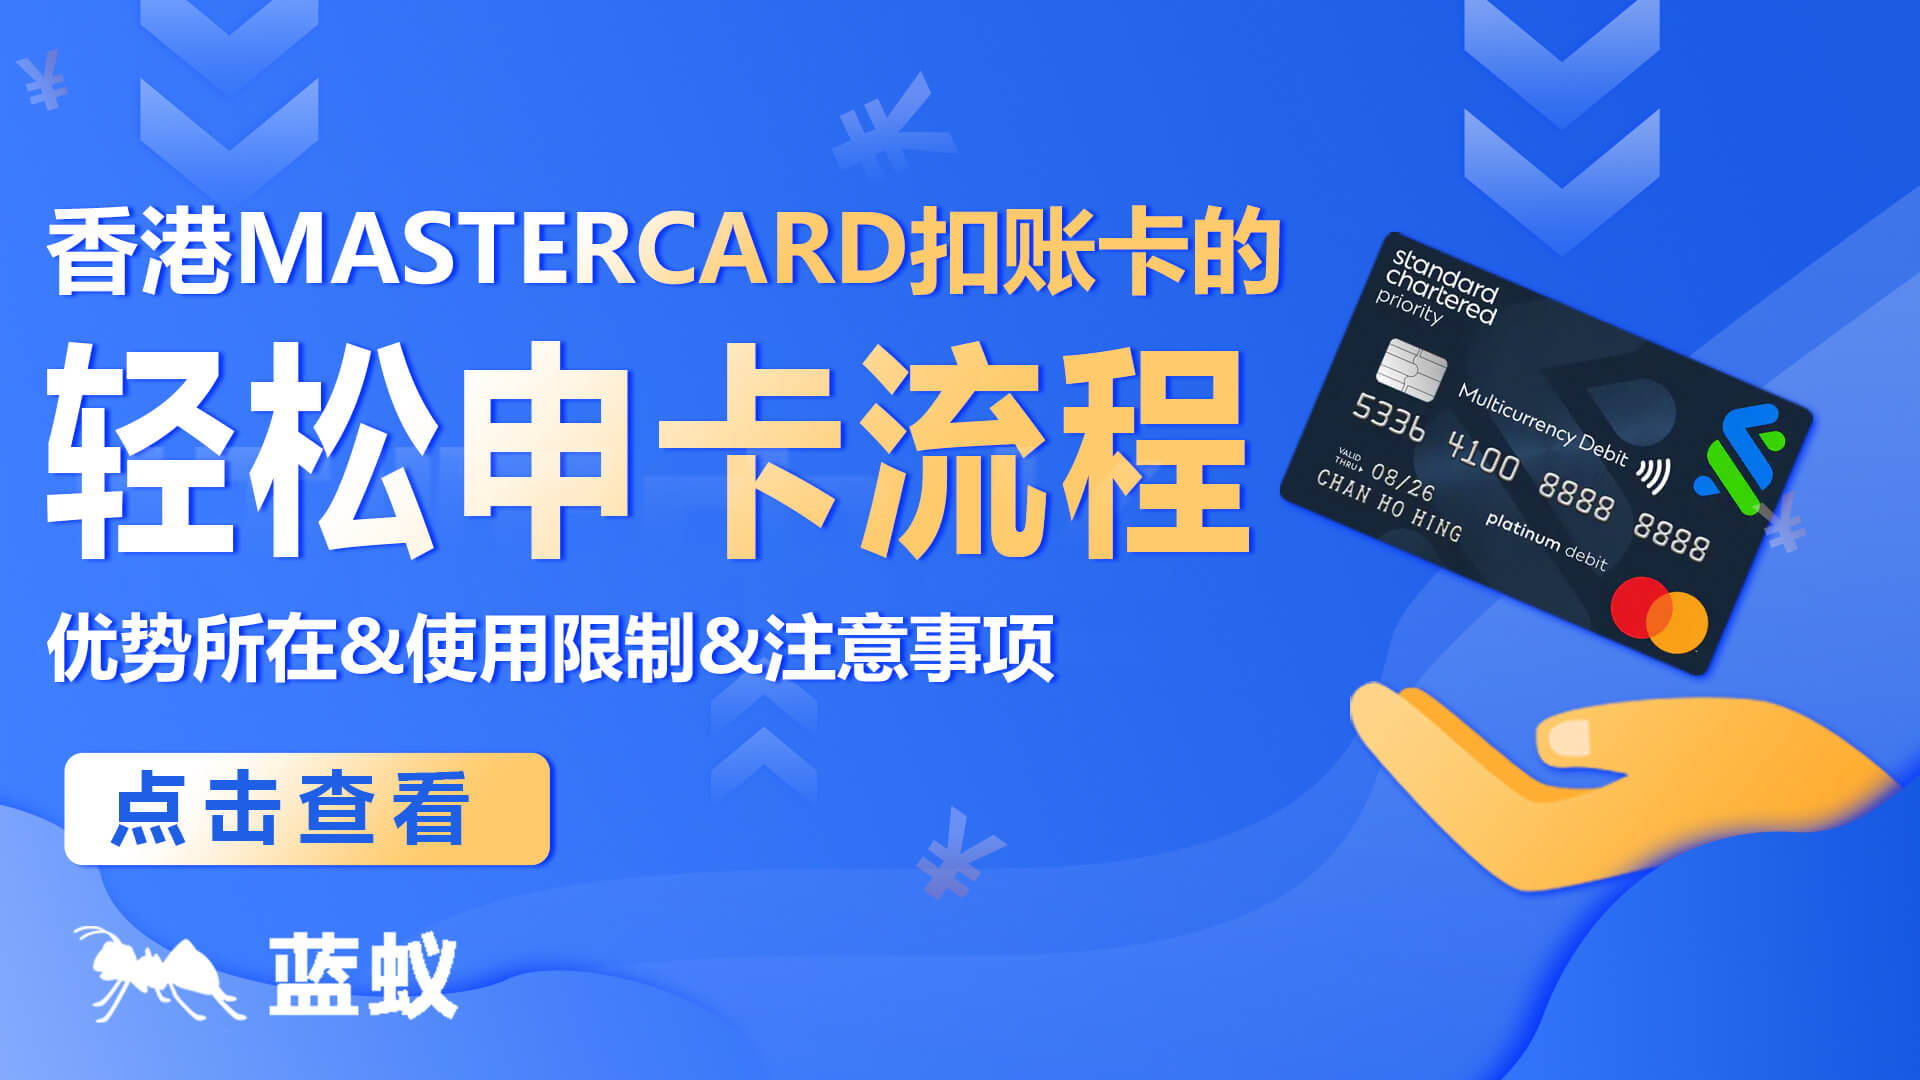 香港渣打Mastercard扣账卡的轻松申卡流程：优势&使用限制&注意事项！